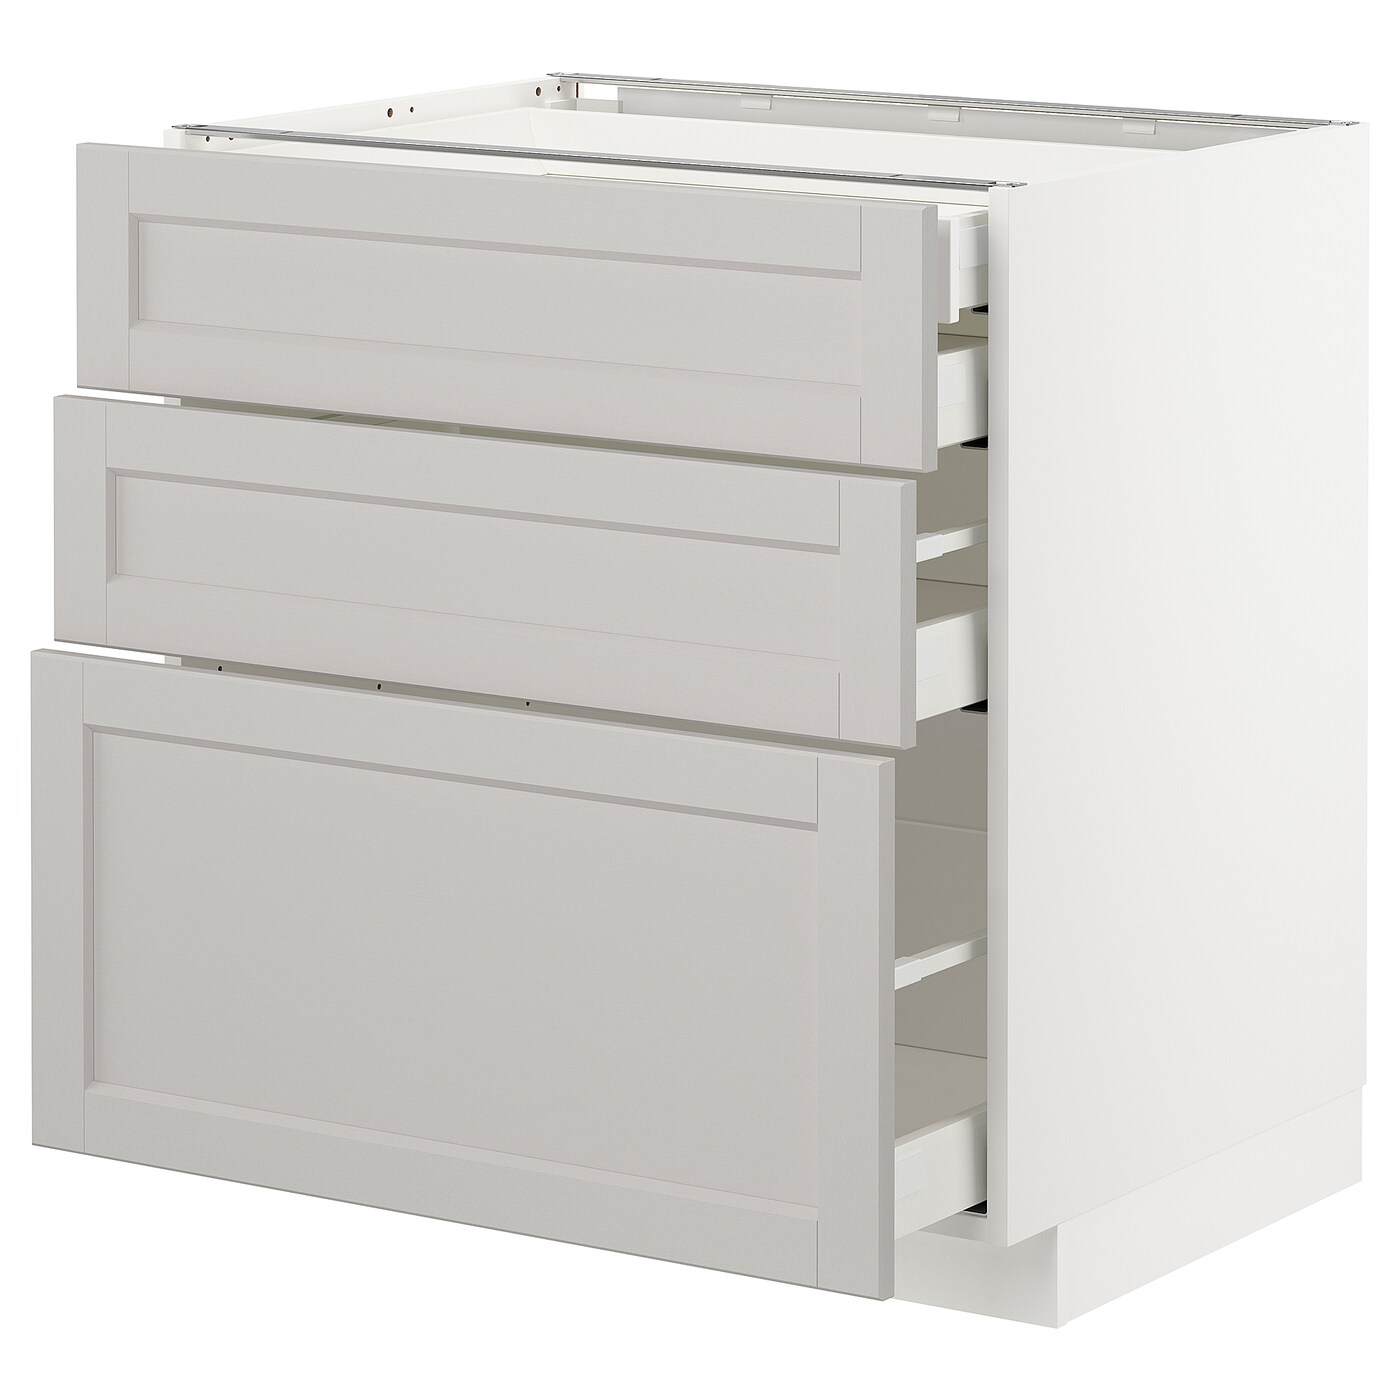 Напольный шкаф  - IKEA METOD MAXIMERA, 88x61,9x80см, белый/светло-серый, МЕТОД МАКСИМЕРА ИКЕА